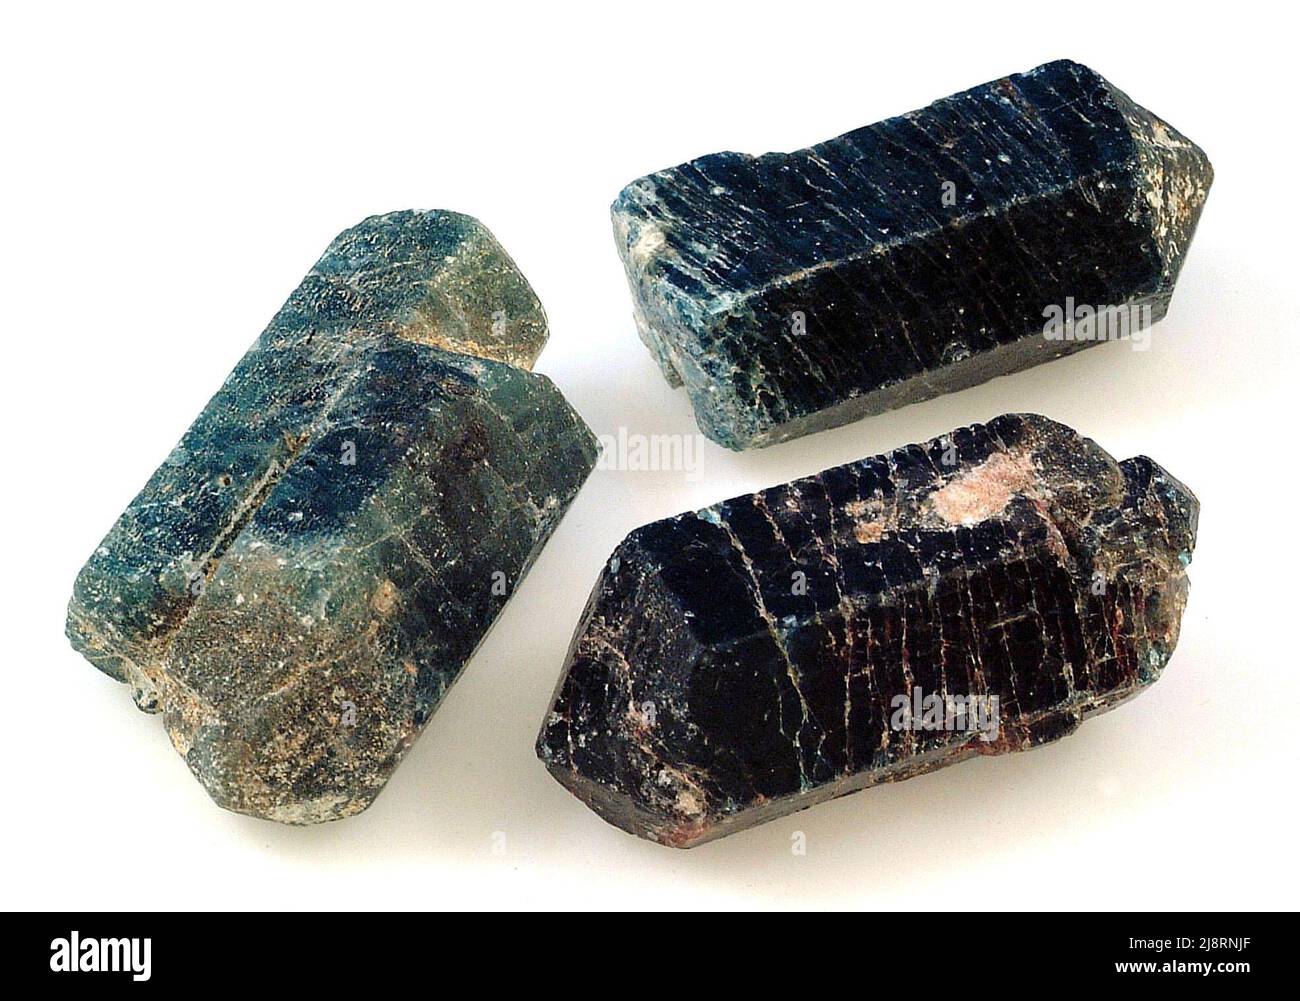 Grands cristaux d'apatite, État de Bahia, Brésil. L'apatite est largement distribué dans tous les types de roches; ignée, sédimentaire et métamorphique, mais n'est habituellement que de petits grains disséminés ou des fragments cryptocristallins. De grands cristaux bien formés peuvent cependant être trouvés dans certaines roches métamorphiques de contact. Les cristaux très gemmes de l'apatite peuvent être coupés comme des pierres précieuses mais la douceur de l'apatite empêche une large distribution ou acceptation de l'apatite comme pierre précieuse. Ces cristaux prismatiques hexagonaux ont une dimension de 6 cm plus longue. L'apatite CA5(PO4)3(OH,F,Cl) est le minéral phosphate le plus courant. Banque D'Images